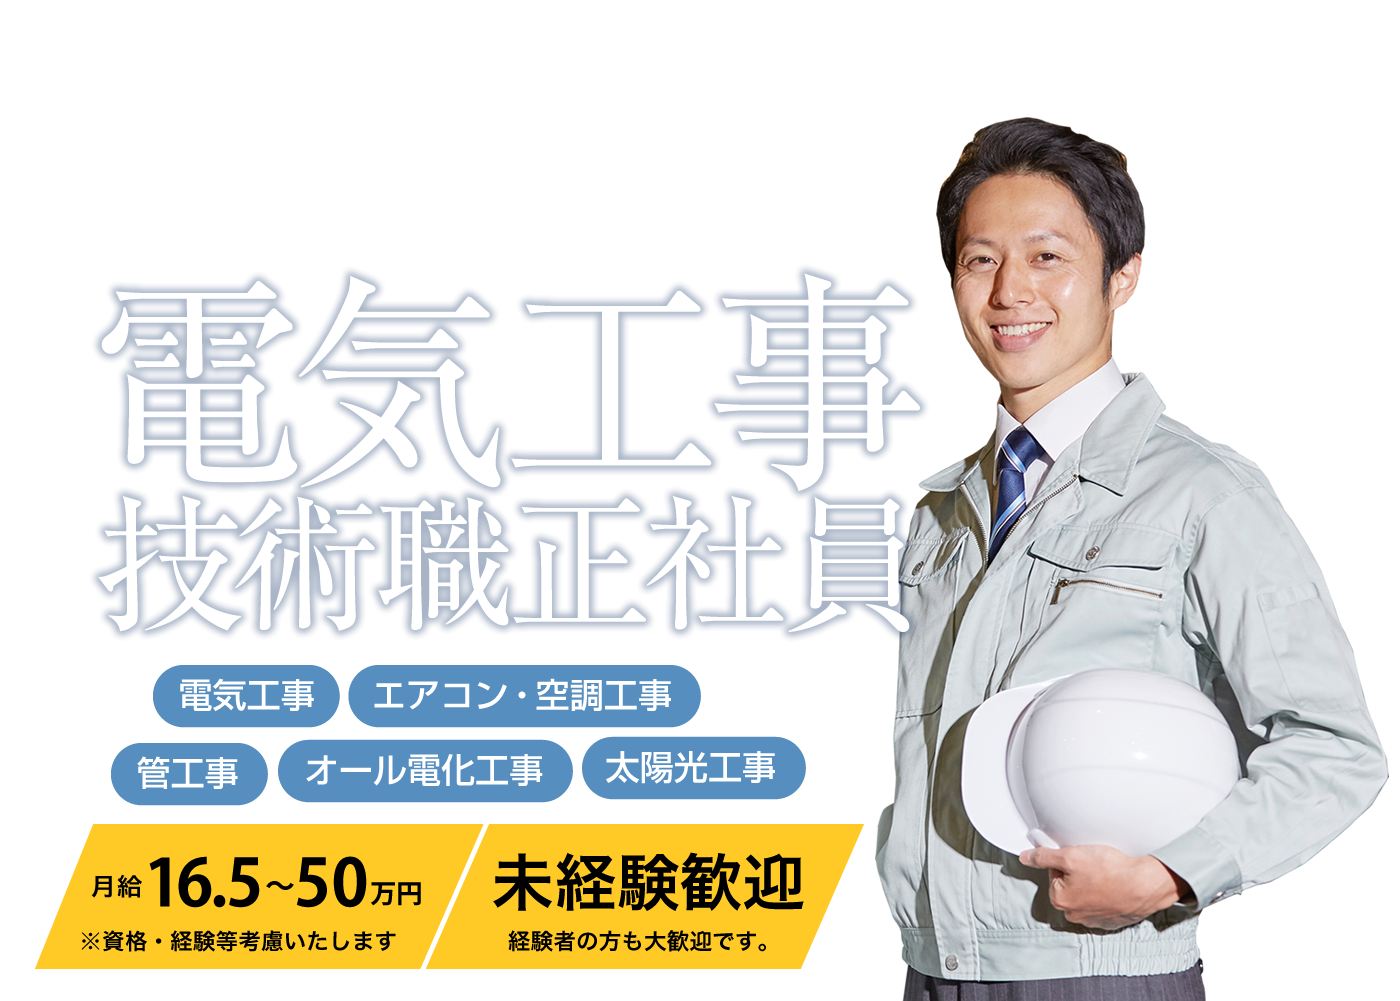 高知県で電気工事・管工事・空調工事を施工を行っている株式会社ヤマト電設では、只今求人募集を行っております